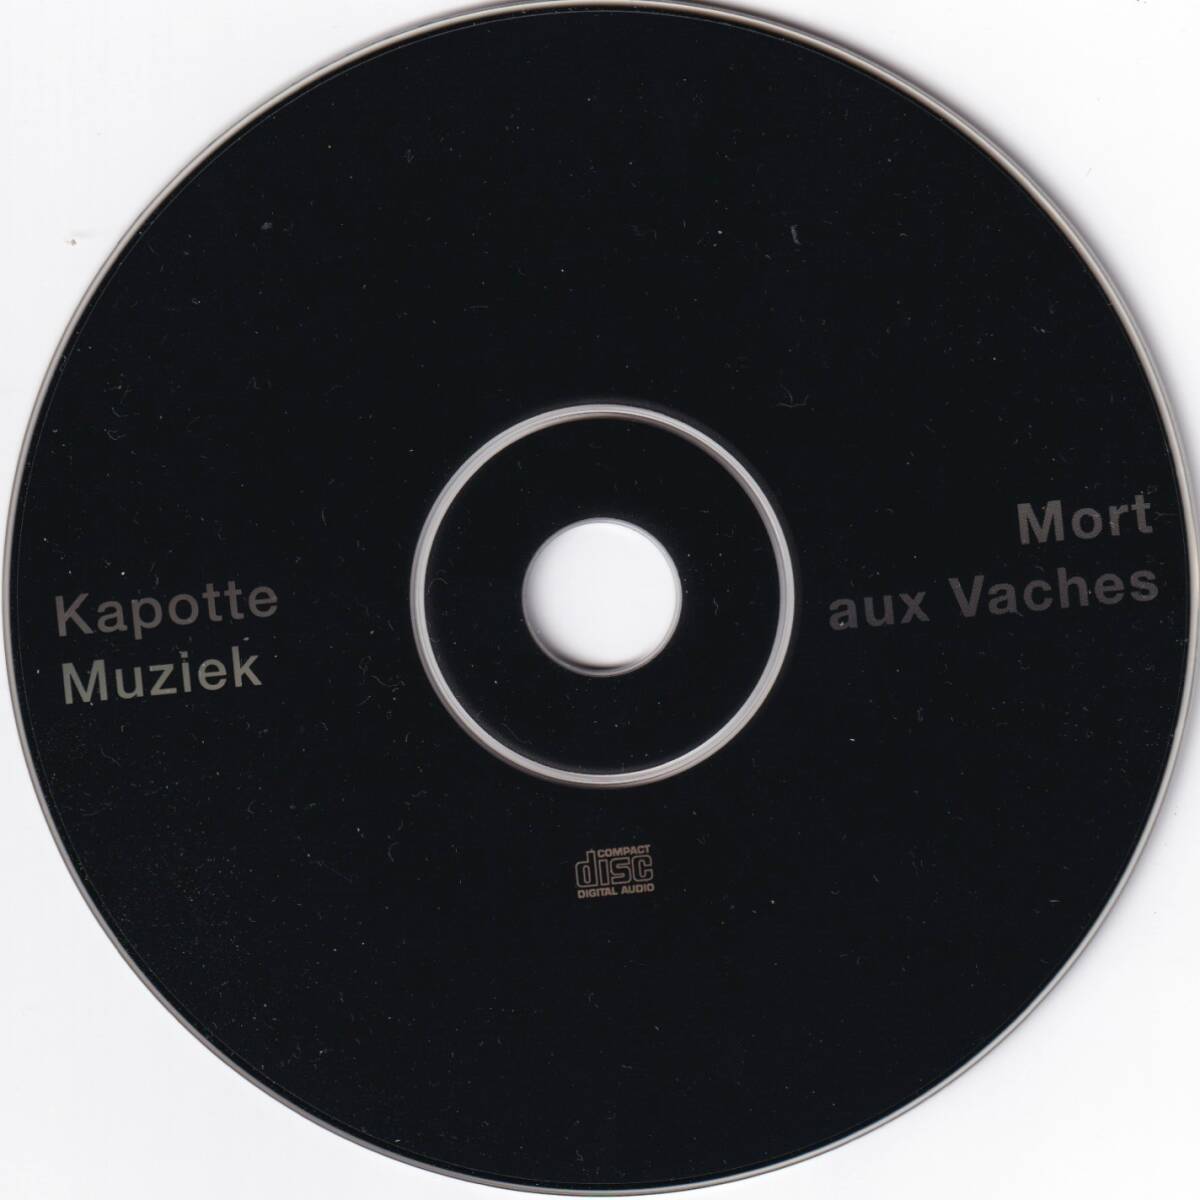 Kapotte Muziek / Mort Aux Vaches / CD / Mort Aux Vaches / none *限定600枚 No.219_画像5